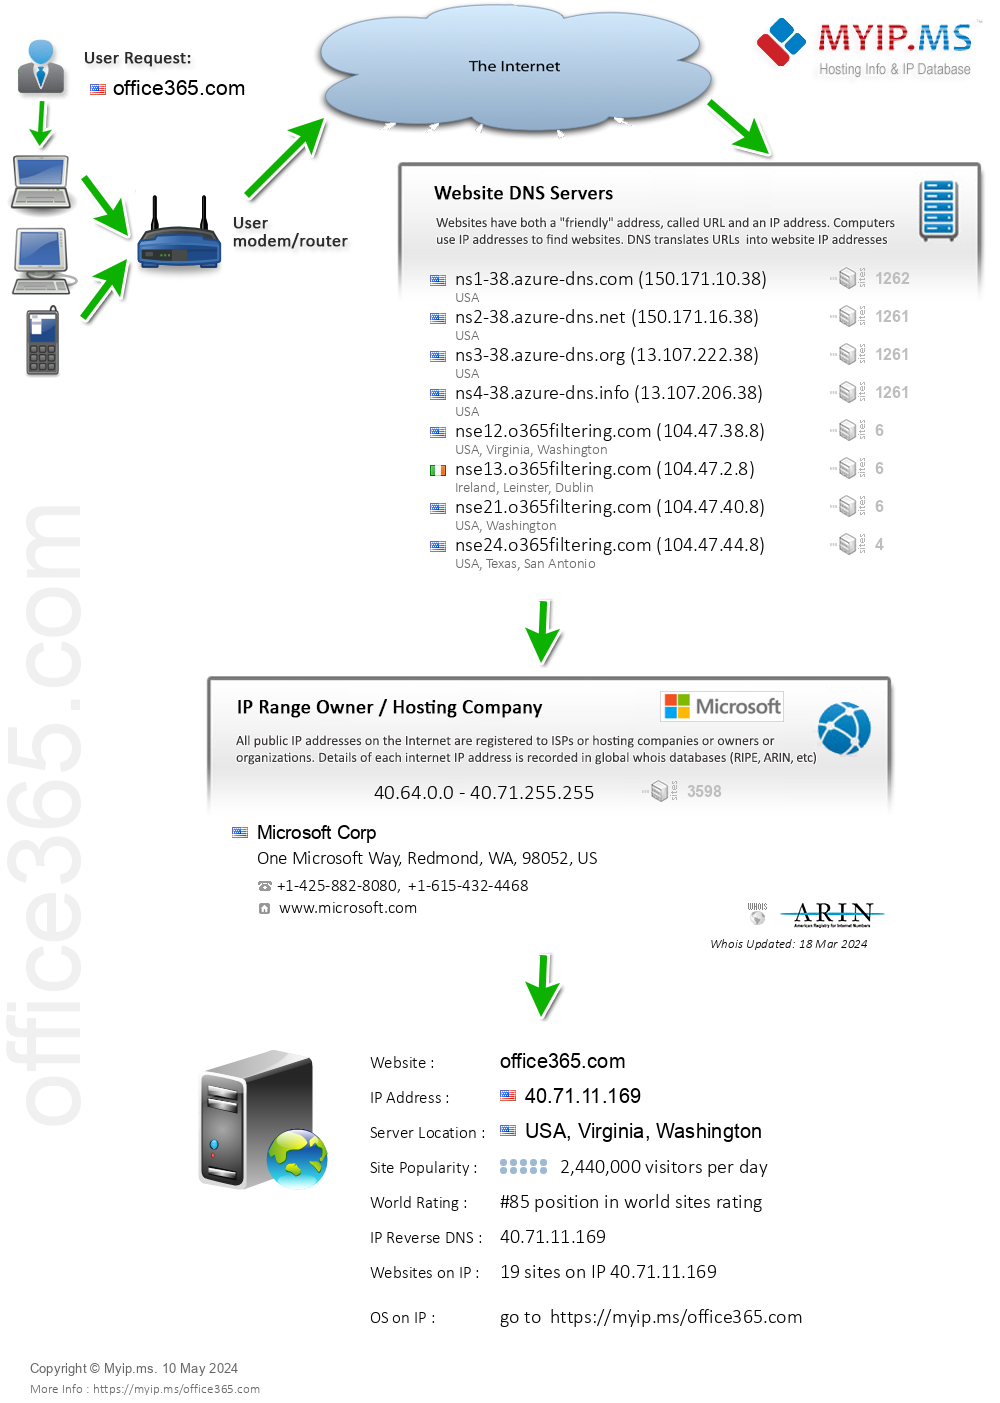 Office365.com - Website Hosting Visual IP Diagram